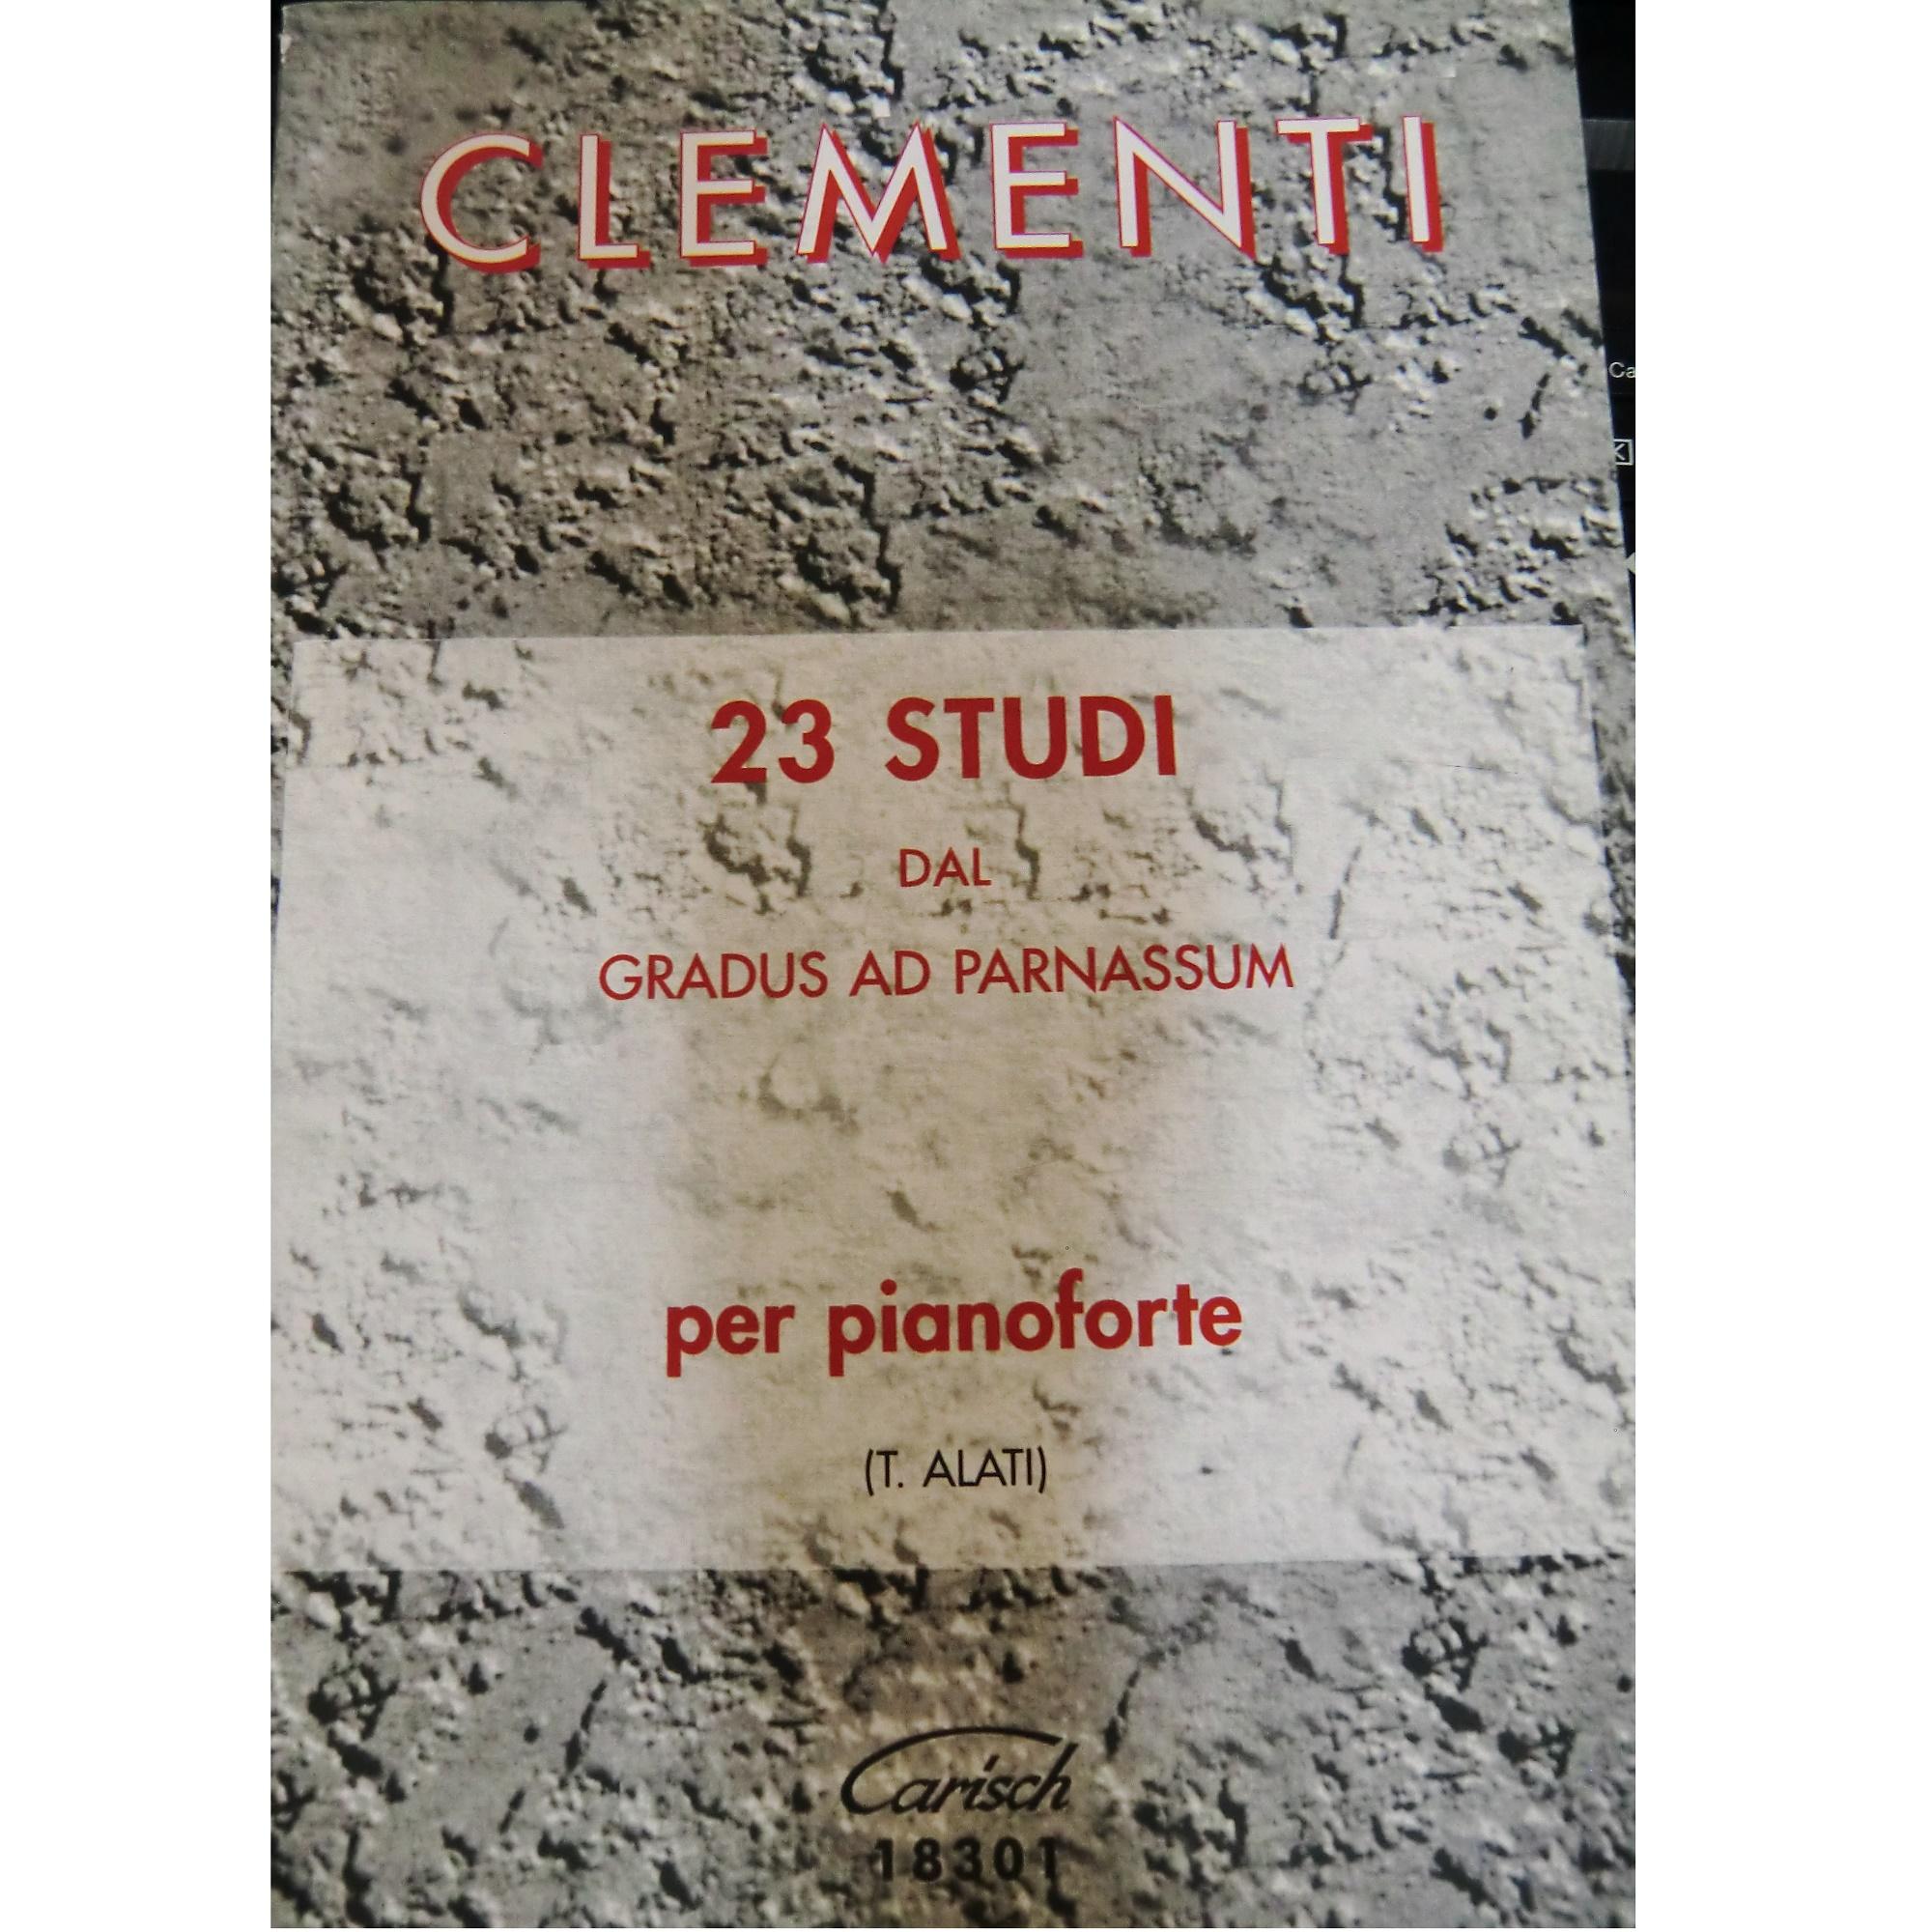 Clementi 23 STUDI dal gradus ad parnassum per pianoforte (Alati) - Carisch